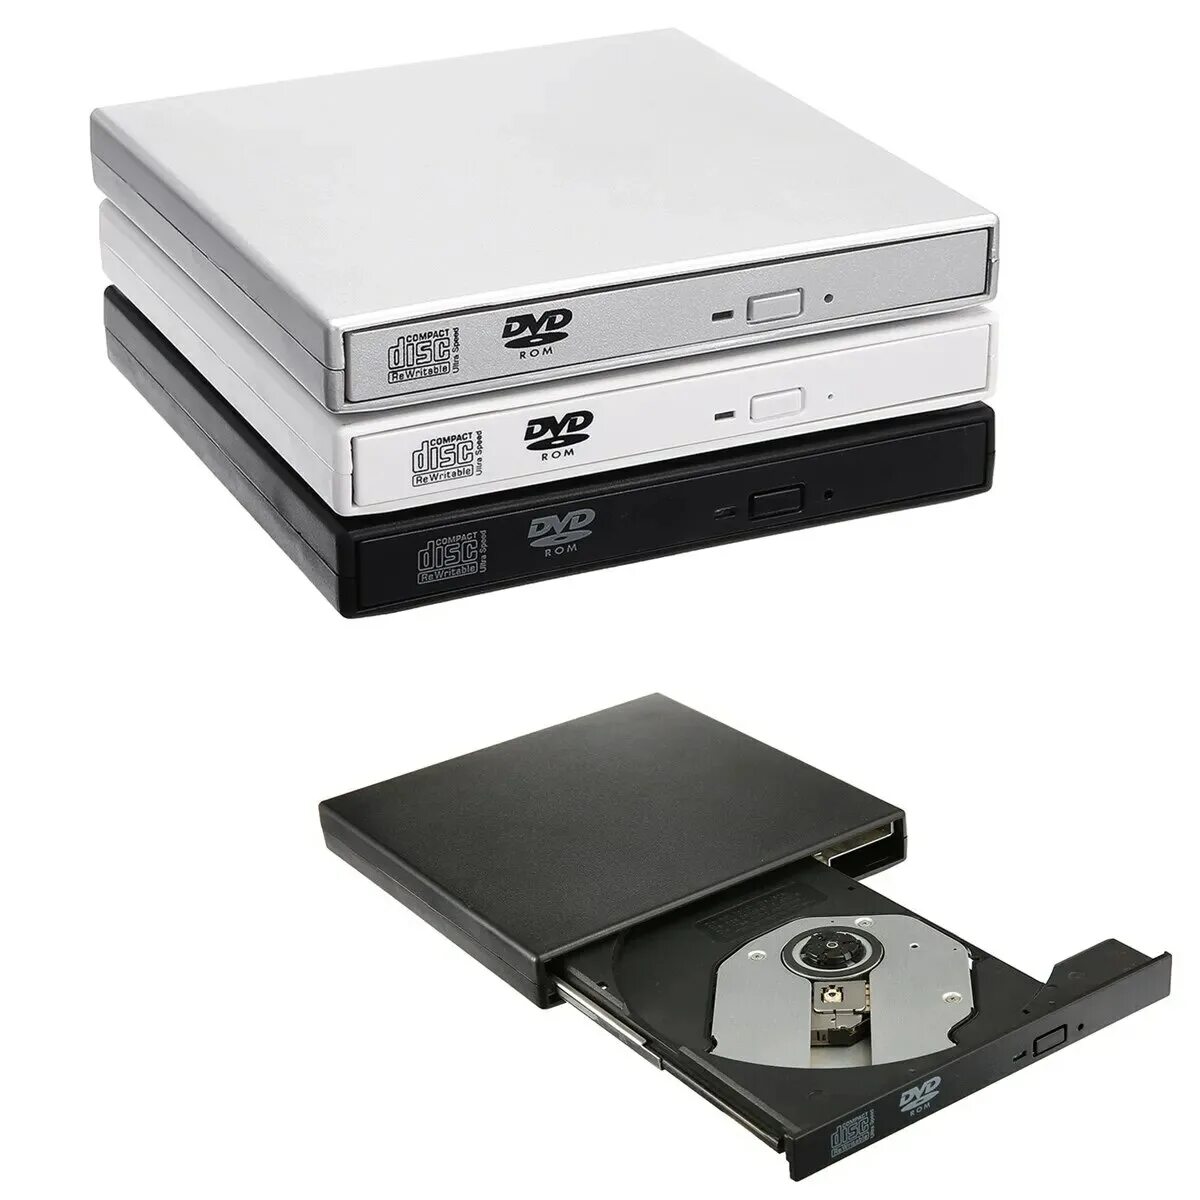 USB внешний CD RW привод. CD-ROM/RW, DVD-ROM/RW. Внешний DVD-RW привод (USB). Юсб двд Ром. Usb привод купить